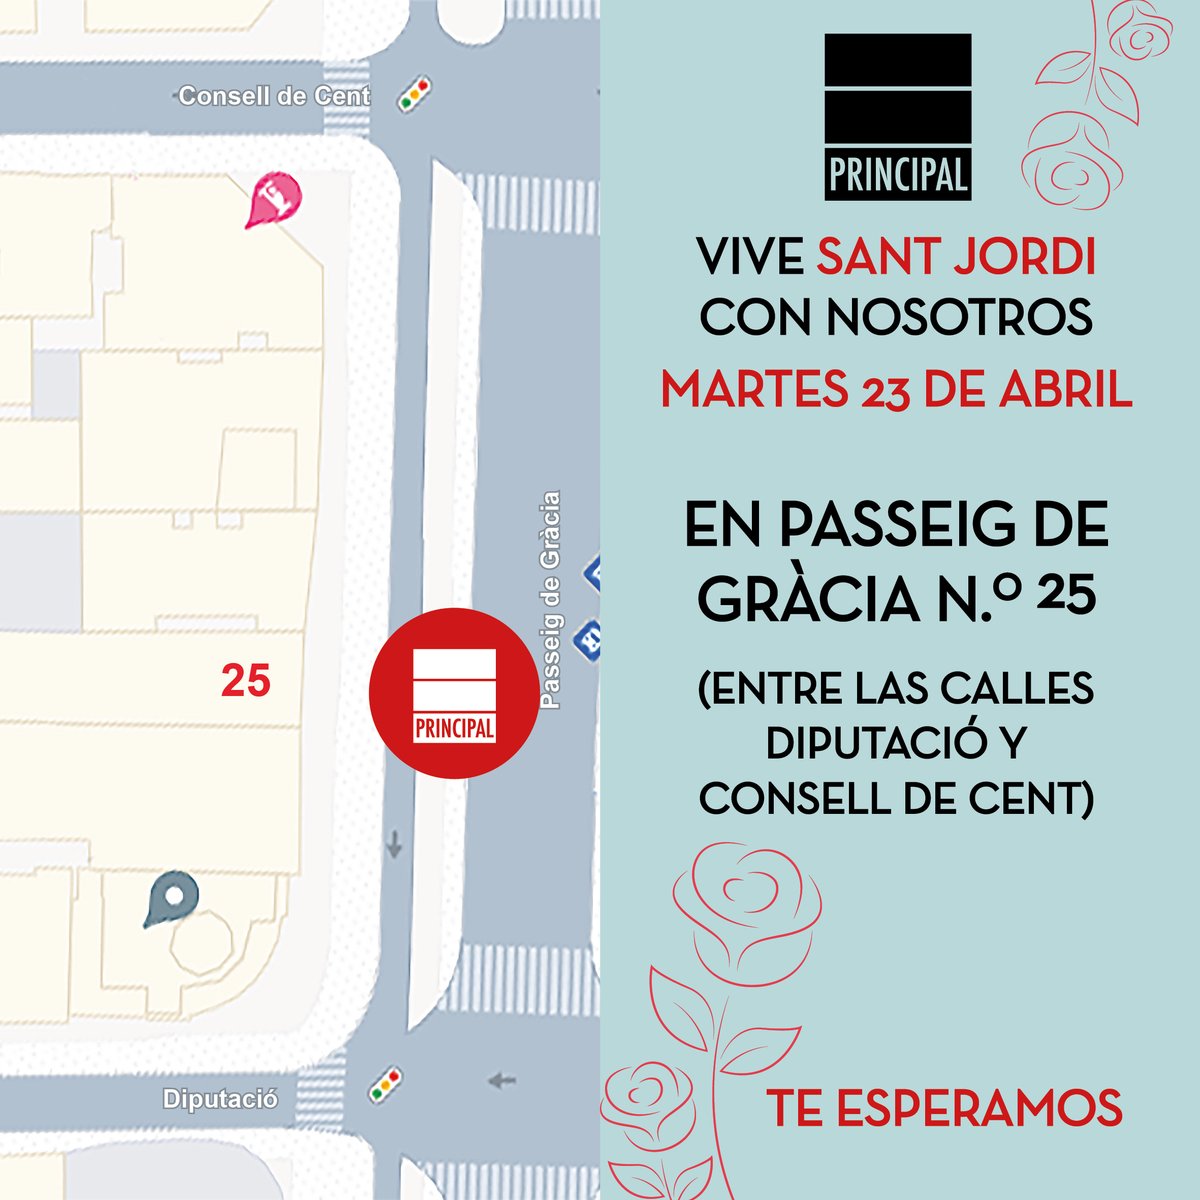 Vive Sant Jordi con nosotros 🌹 ¡Os esperamos en nuestra parada! ✨ 📌 Passeig de Gràcia n°25 (entre las calles Diputació y Consell de Cent) ¡Allí nos vemos! #Principaldeloslibros #PrincipalNoir @udllibros